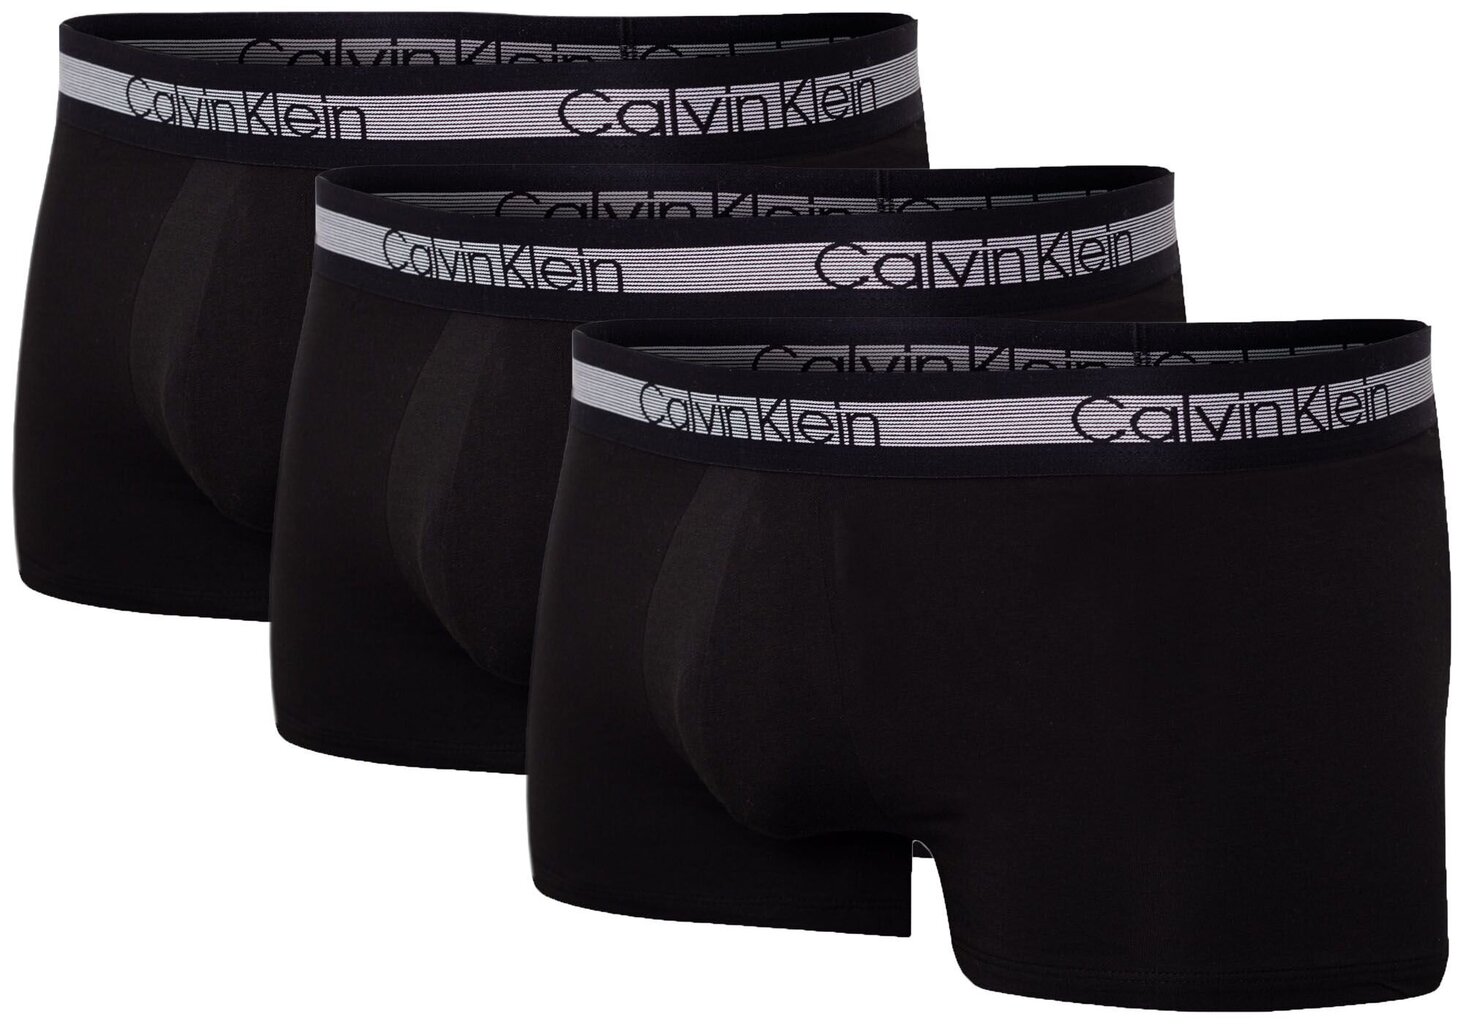 Bokseršorti vīriešiem Calvin Klein Cooling Trunk, 3 pāri, melni NB1799A 001 12469 cena un informācija | Vīriešu apakšbikses | 220.lv